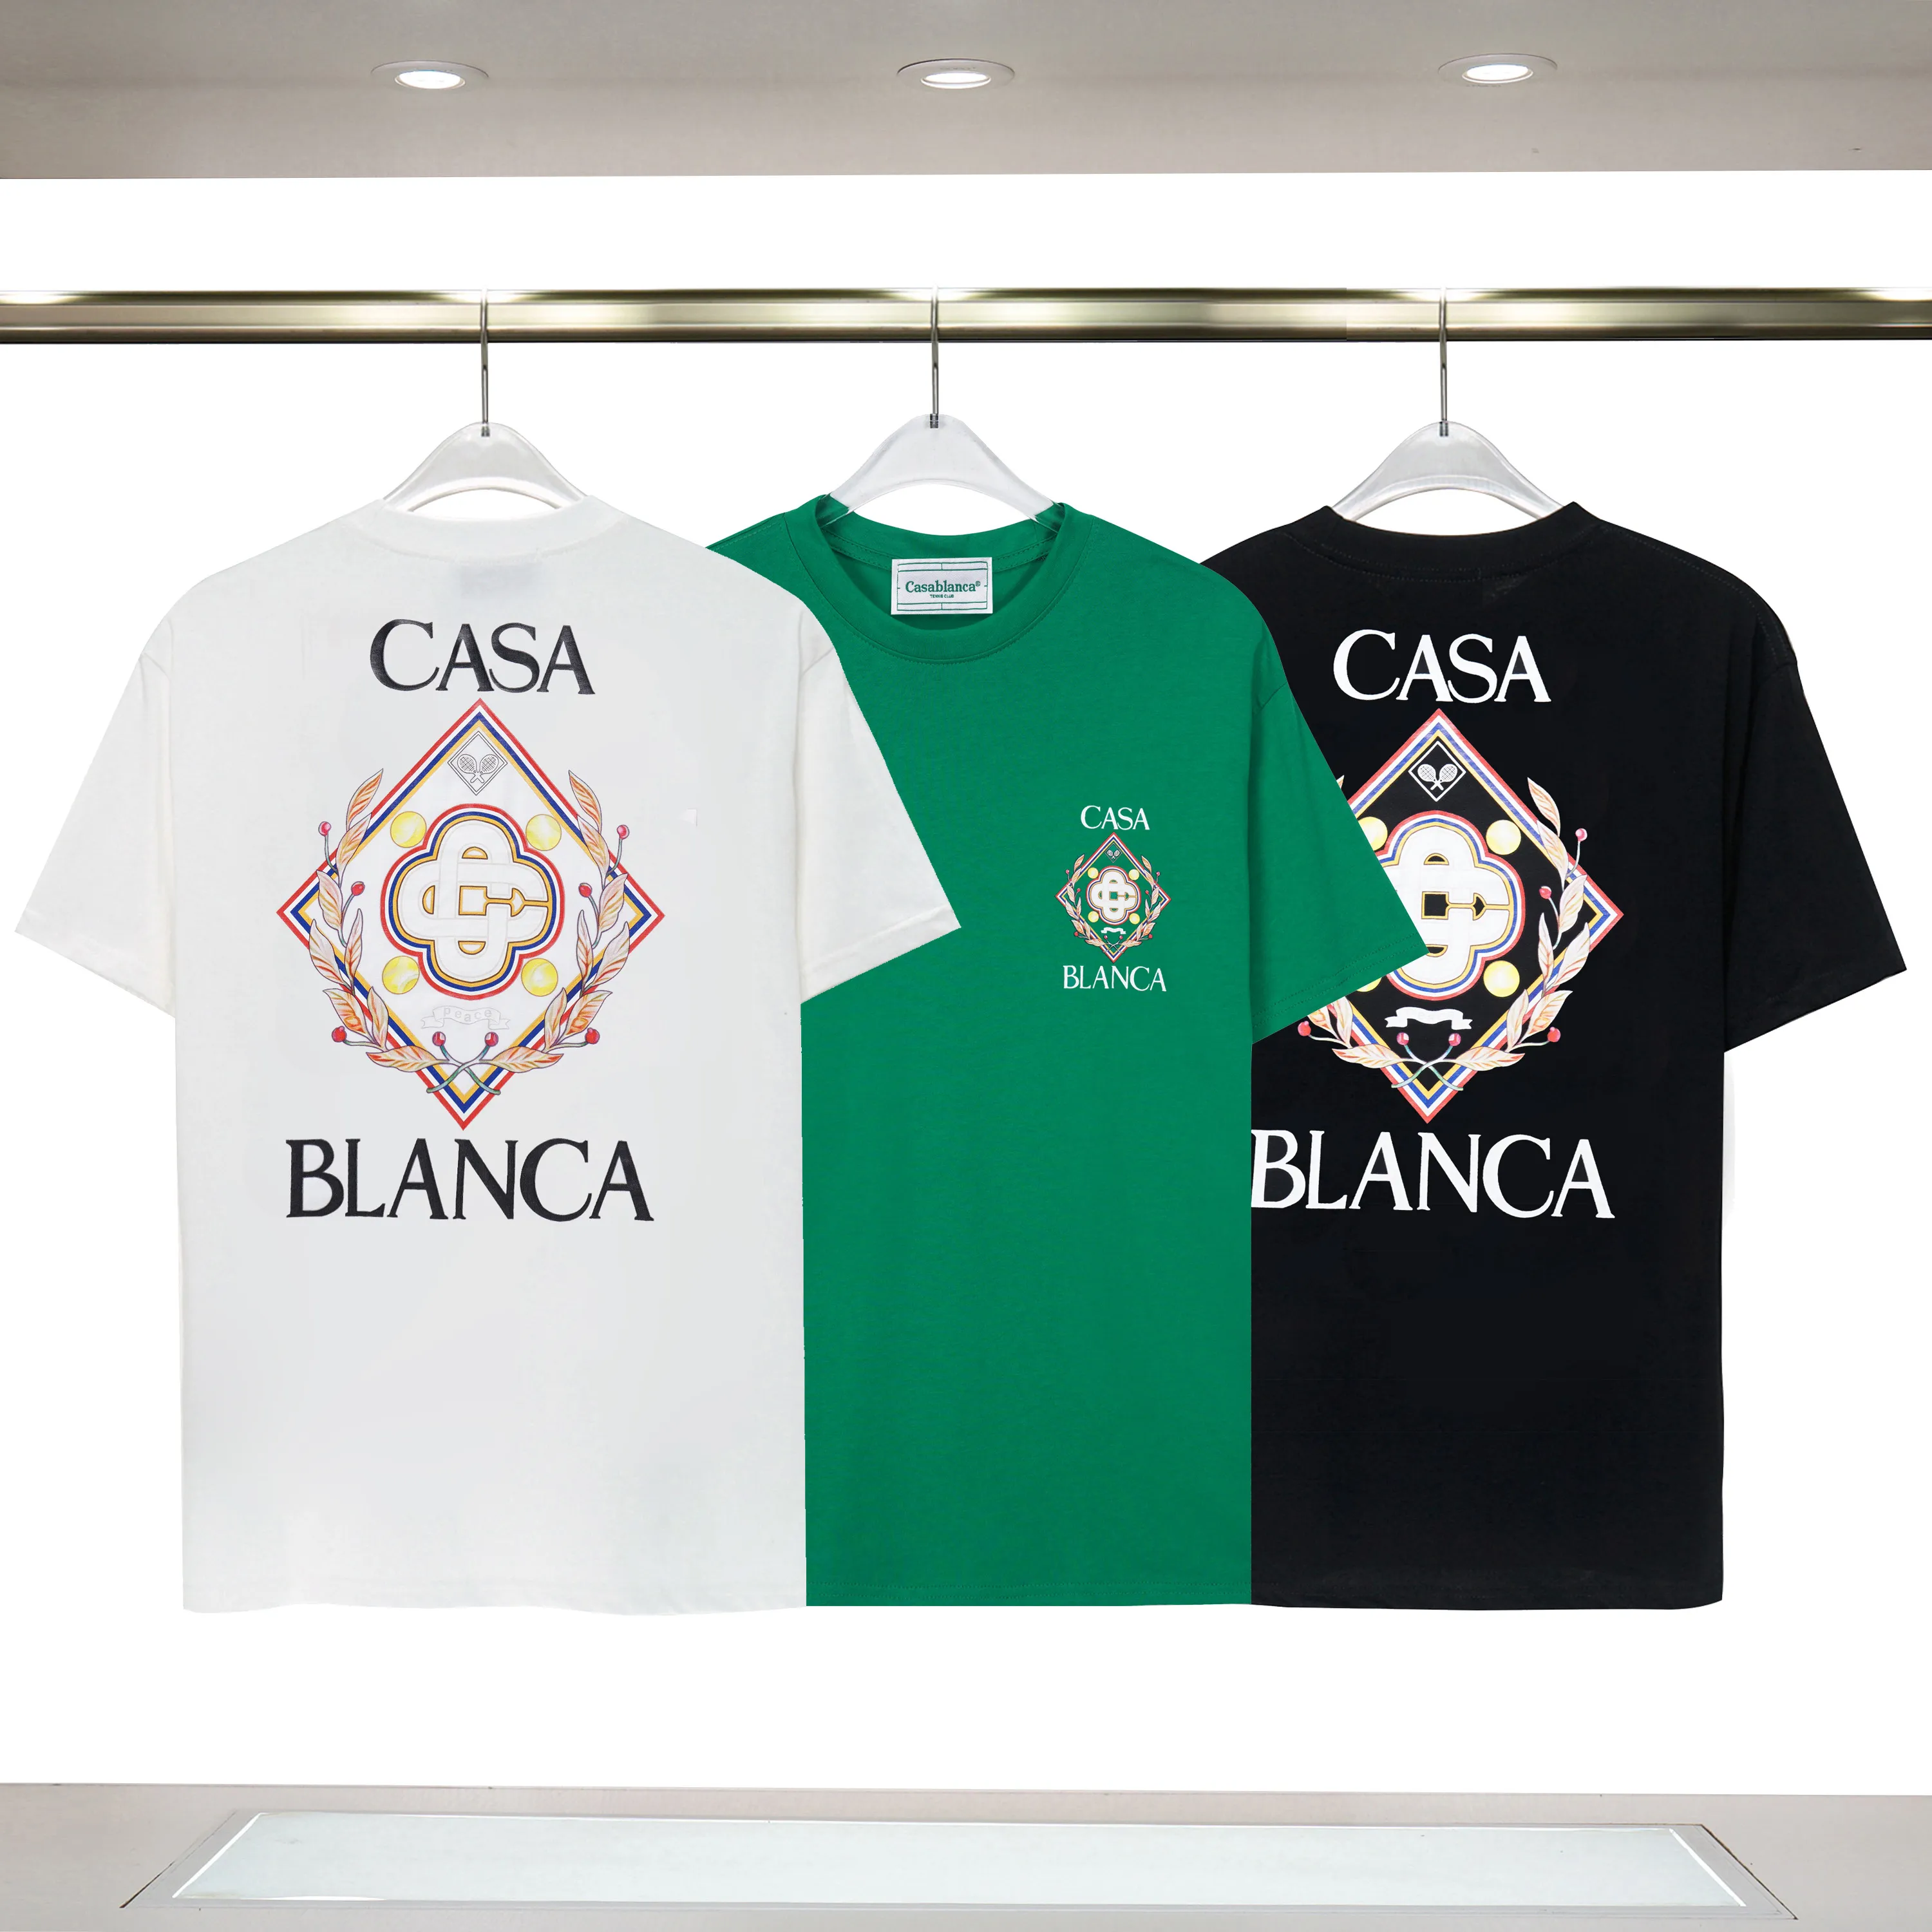 Herrendesigner T-Shirt Casablanc Man Frauen Hemden mit Buchstaben Drucken Kurzärmele Sommer Casablanca T-Shirts Männer Lose Tees US Size S-3xxl